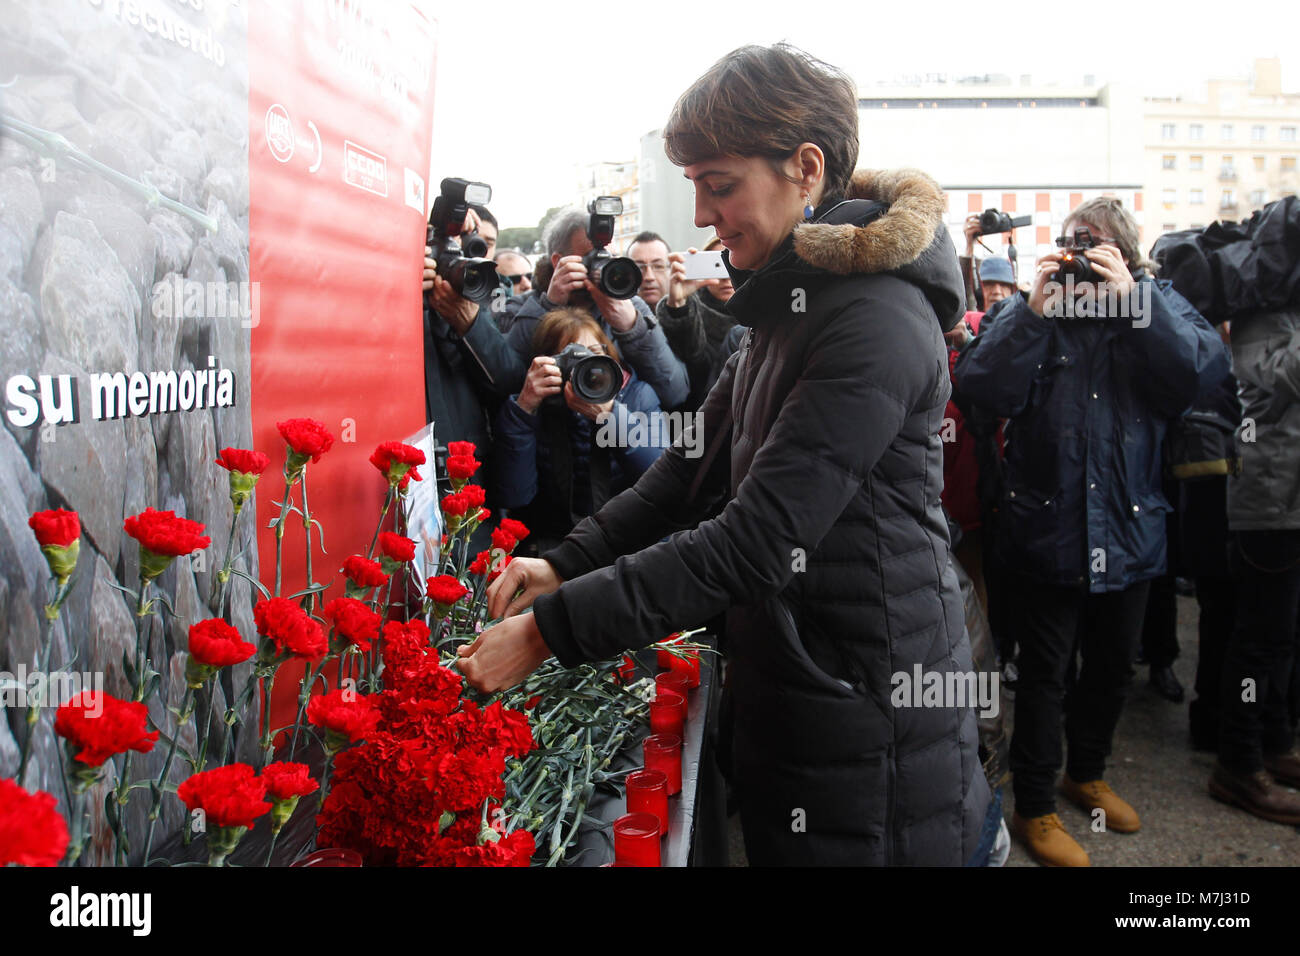 Madrid, Spagna. 11 marzo, 2018. durante un omaggio alla memoria delle vittime dell'attentato del 11-M 2004, presso la stazione ferroviaria di Atocha domenica 11 marzo 2018. Credito: Gtres Información más Comuniación on line, S.L./Alamy Live News Foto Stock